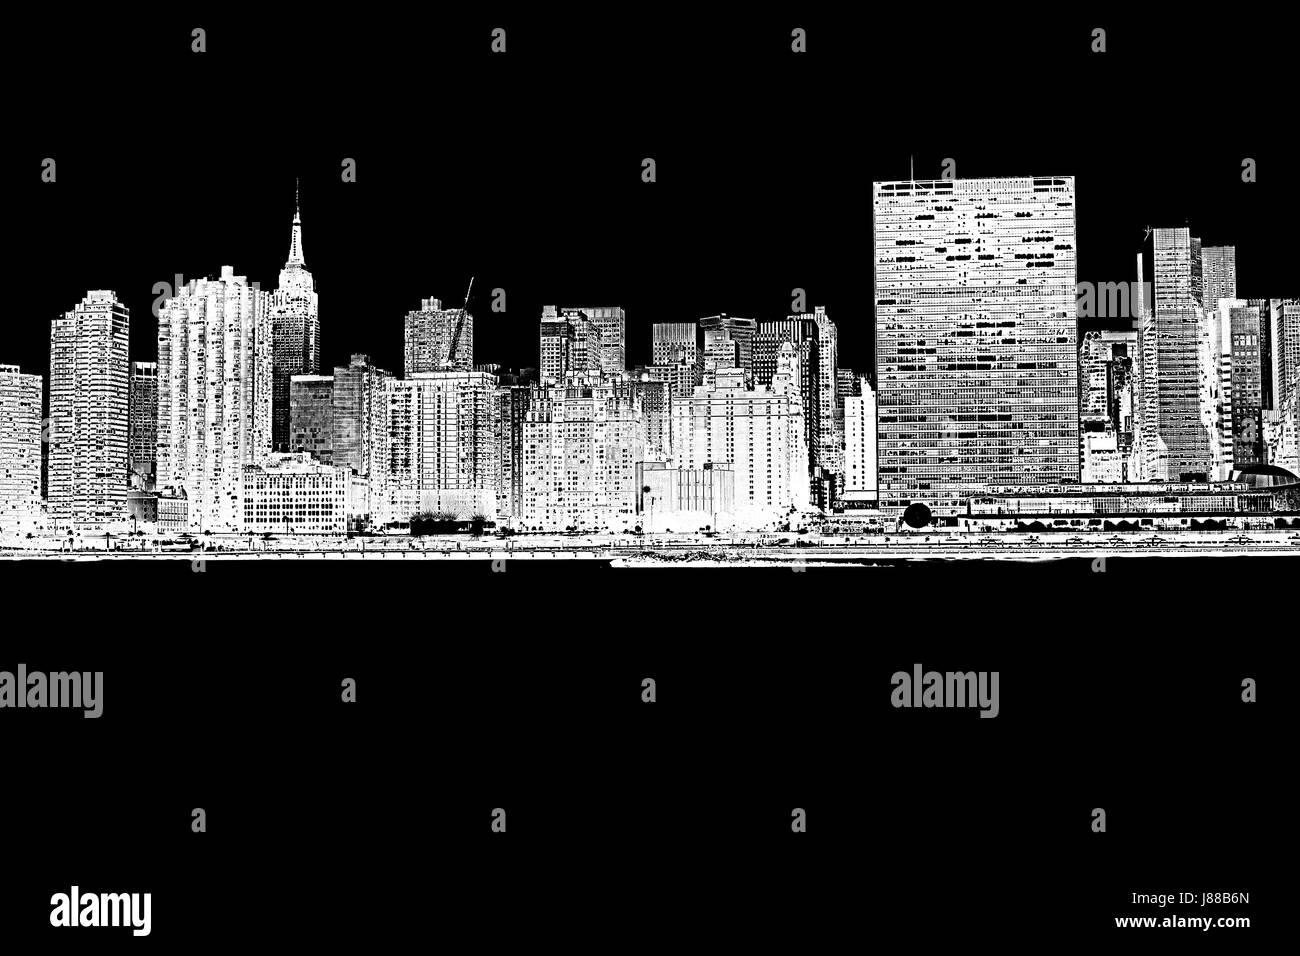 New York City waterfront skyline.Vue de l'Empire state building, UN builoding noir et blanc Banque D'Images